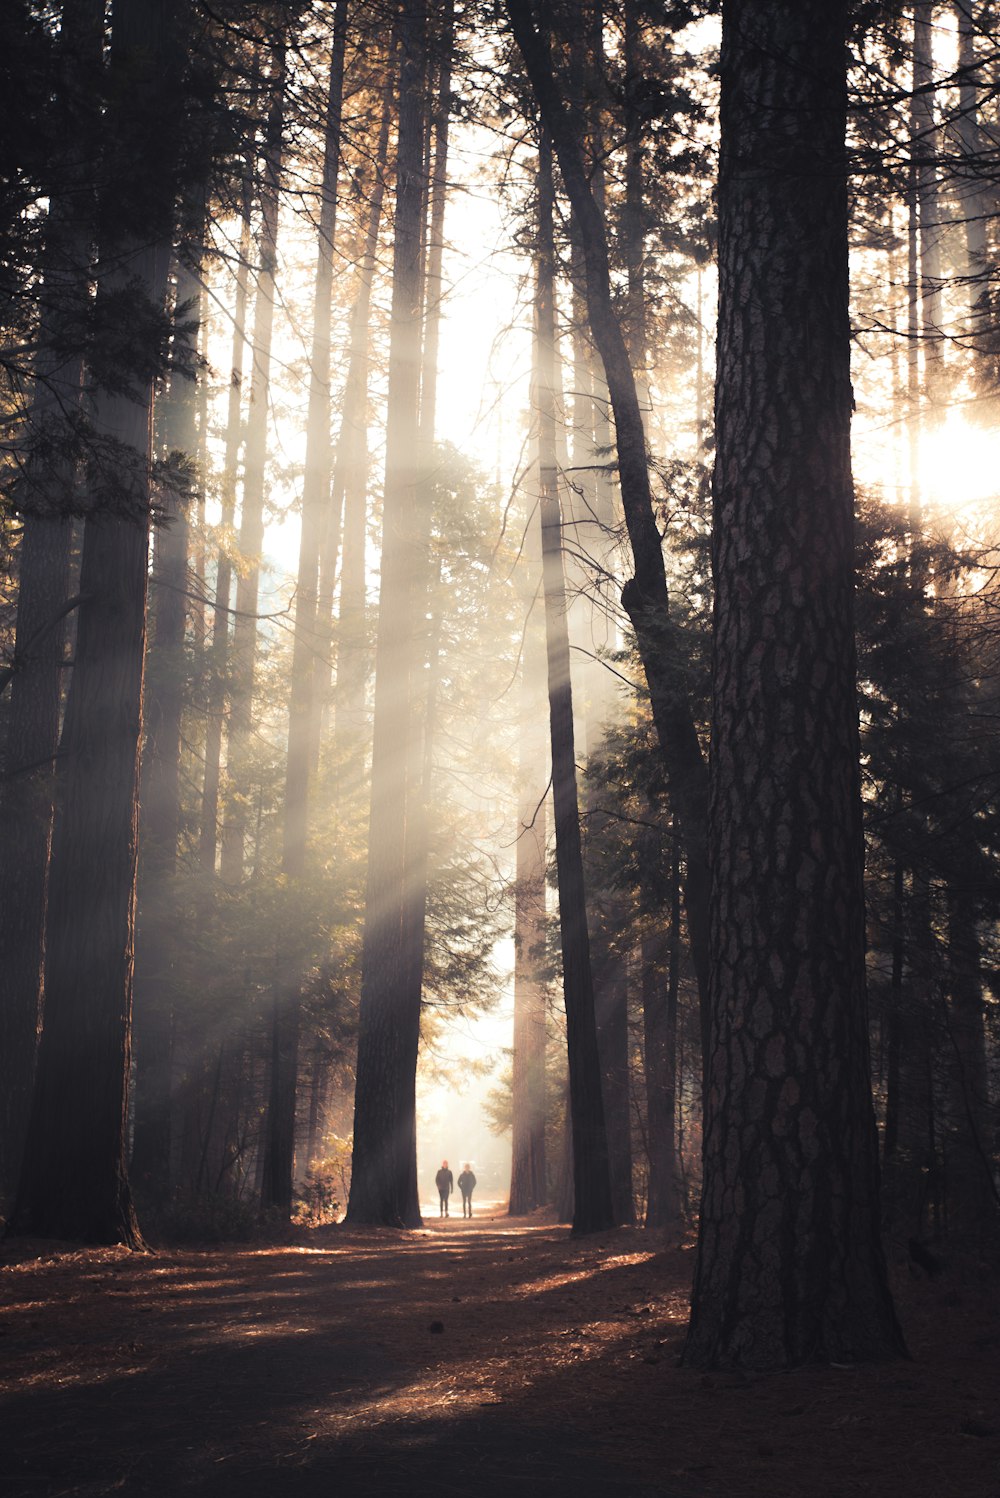 dos personas caminando en medio de árboles altos